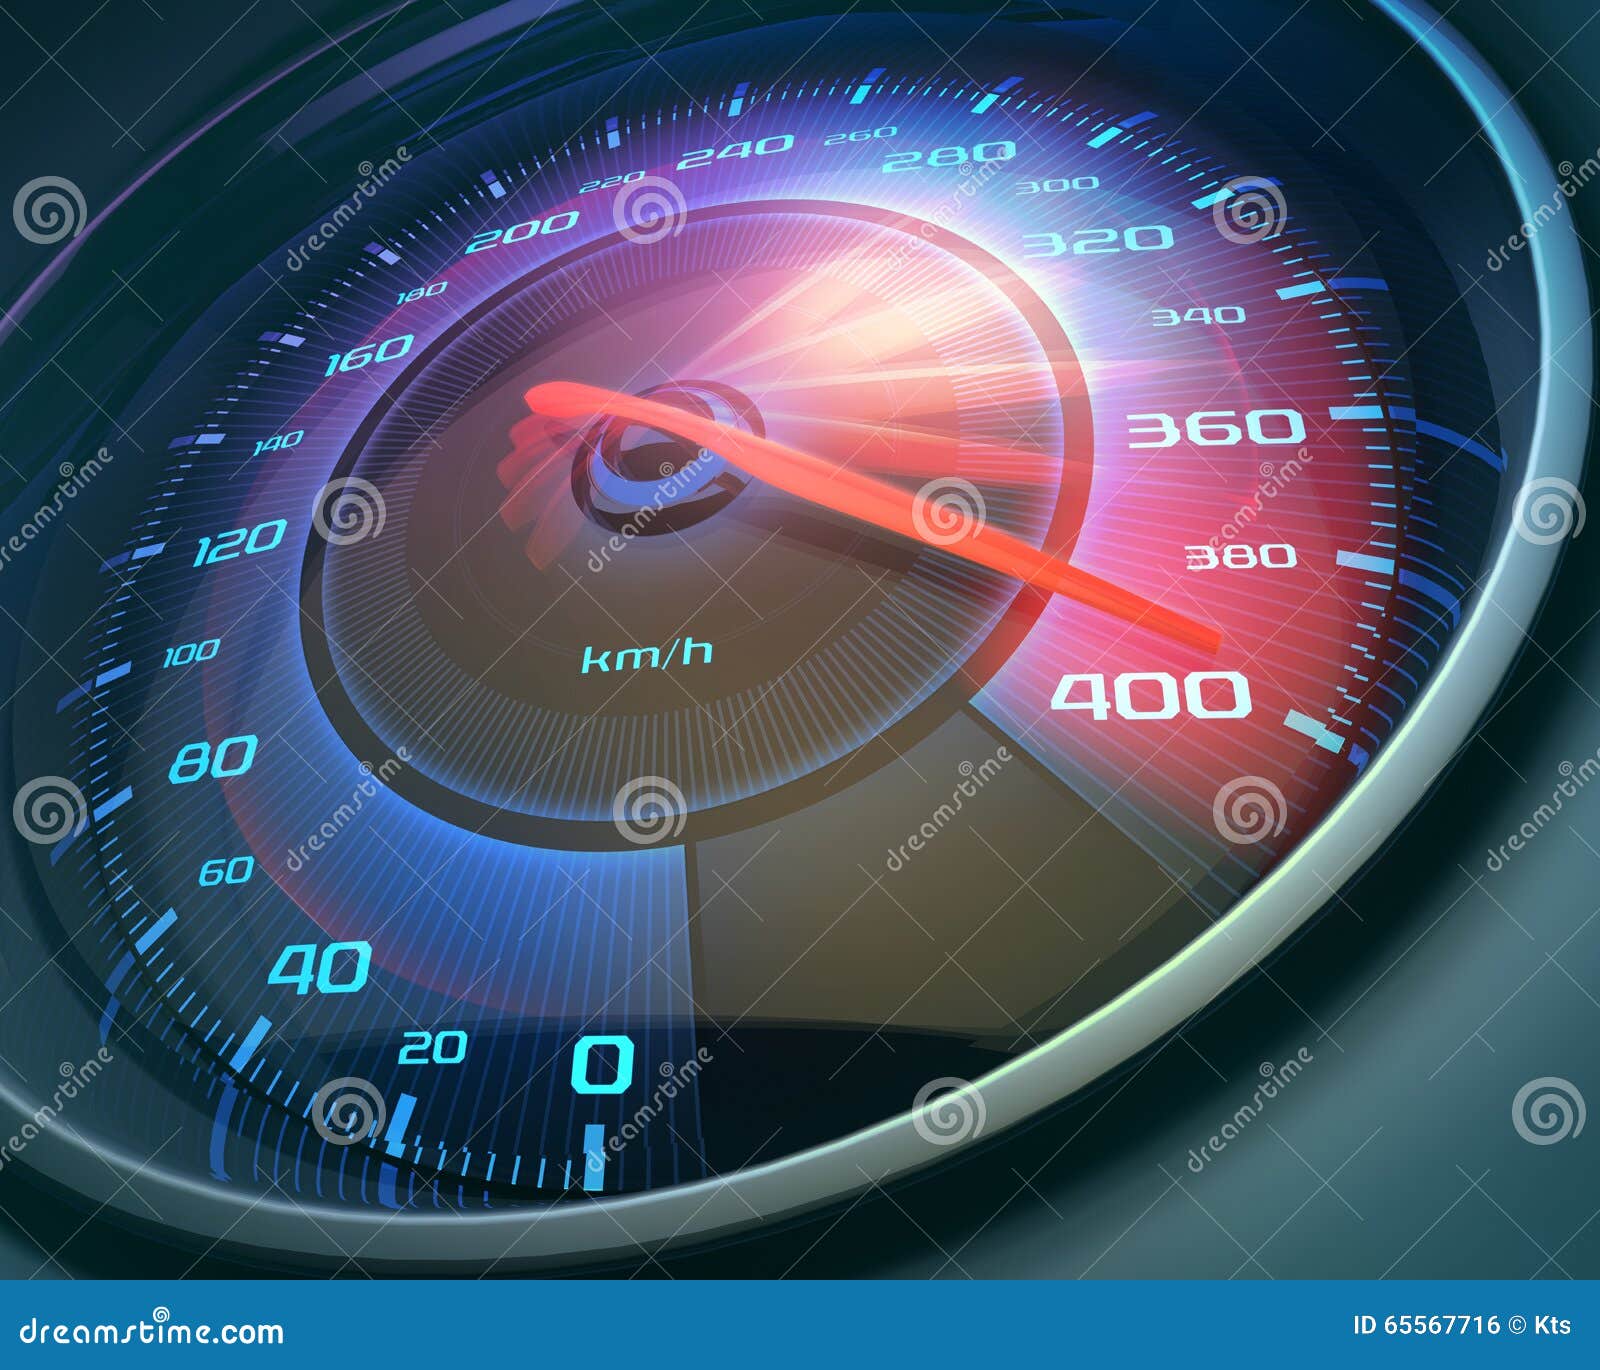 图片素材 : 轮, 测量, 速度, 仪表板, 车速表, 转速表, 里程表, 圈, 插图, 汽油, 英里, 新汽车, 紧凑型车, 低里程, rev计数器, 0 60, 0 mph ...